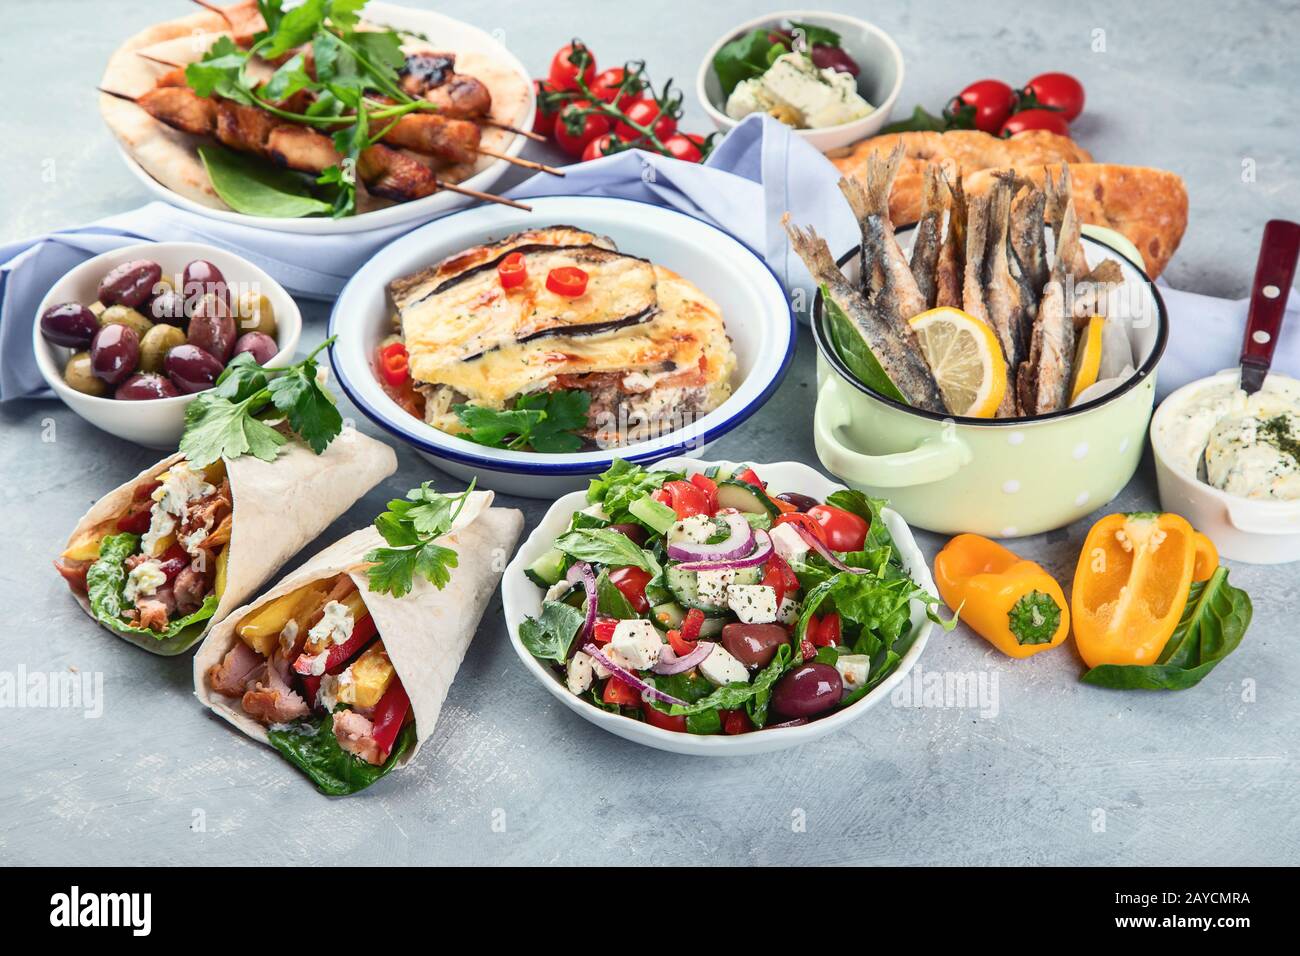 Cibo greco su sfondo grigio. Moussaka, gyros, souvlaki, pita, insalata, olive e verdure. Piatti tradizionali di diversi tipi di piatti greci. Foto Stock